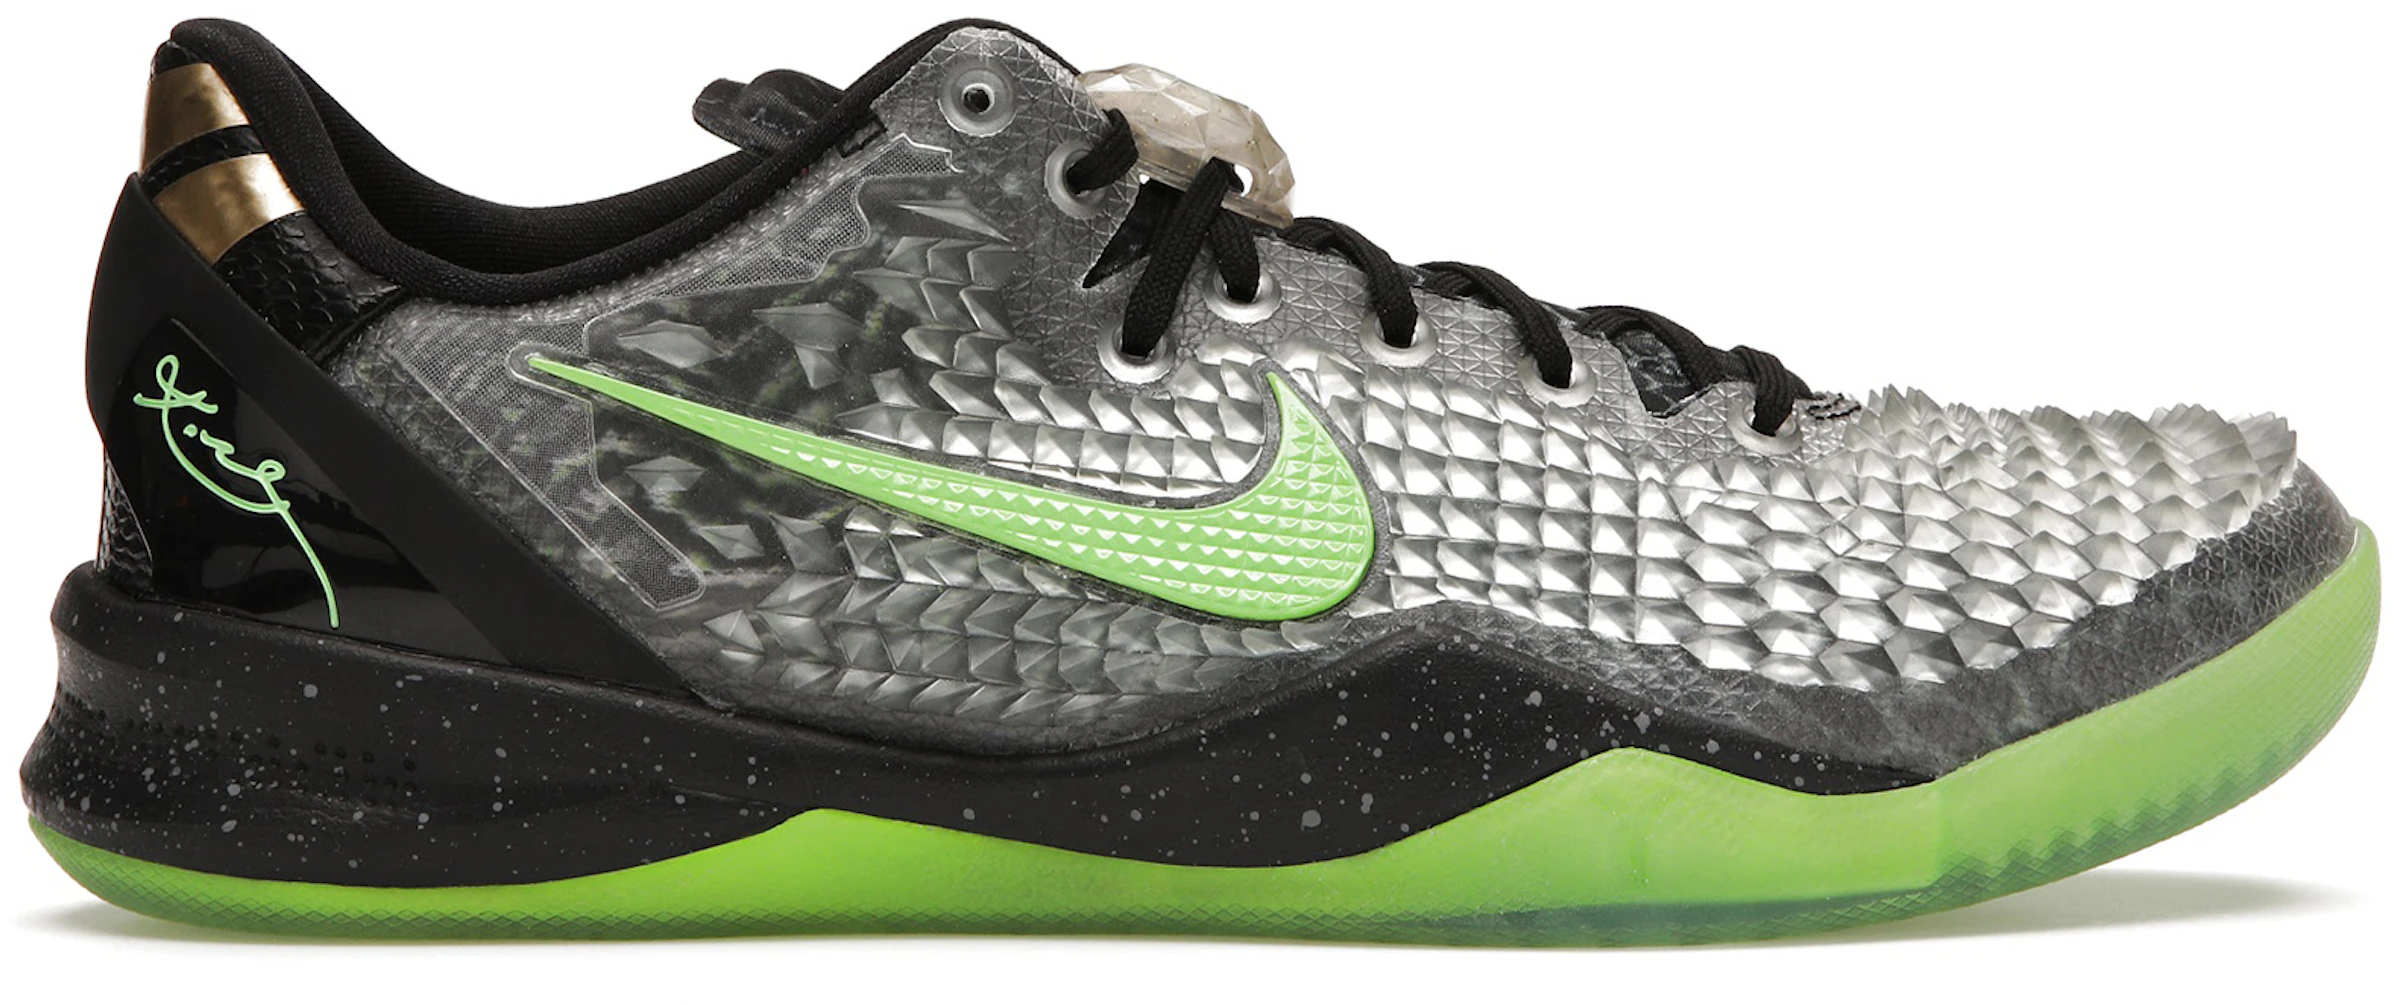 Compra Nike Kobe 8 Calzado y sneakers nuevos -